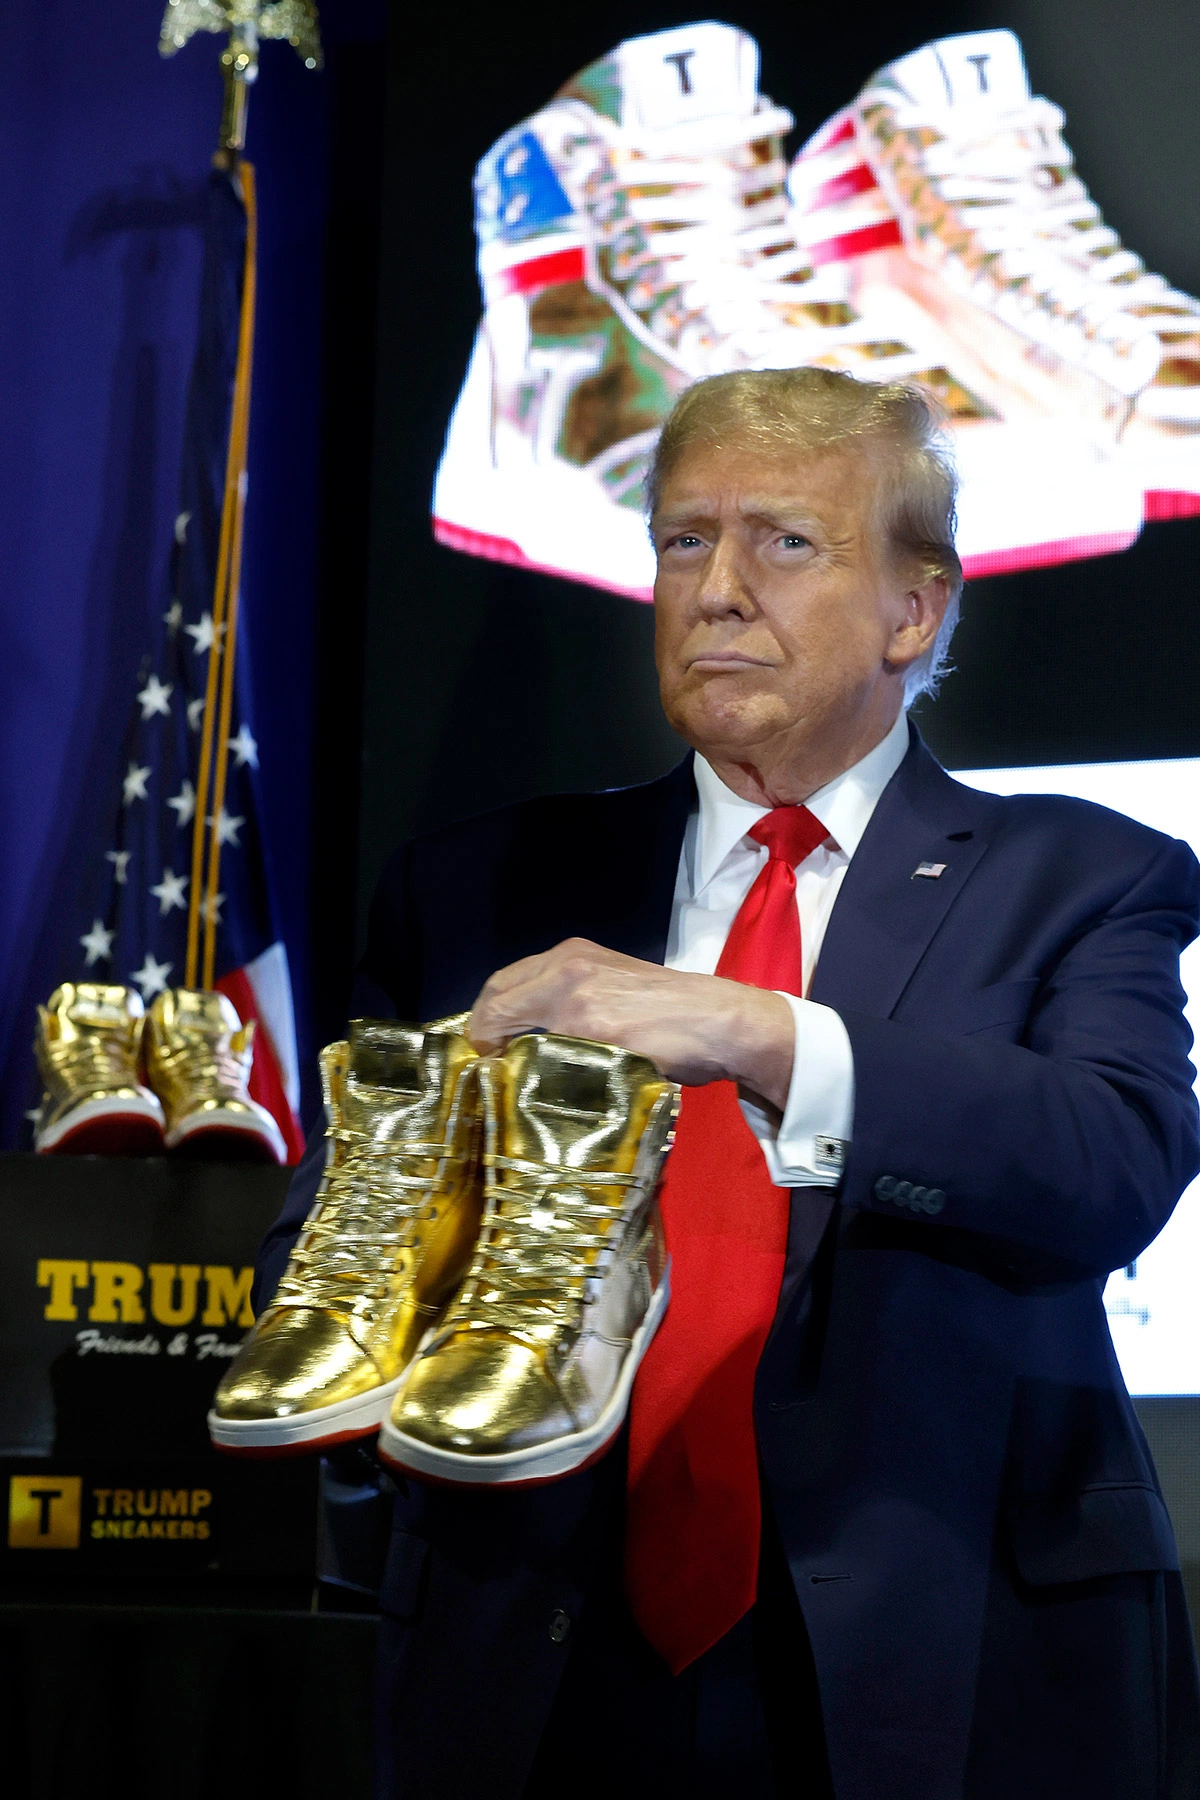 <p>Дональд Трамп представляет золотую модель Trump Sneakers, стоимость которых составляет $399 (36,9 тыс. руб.)</p>